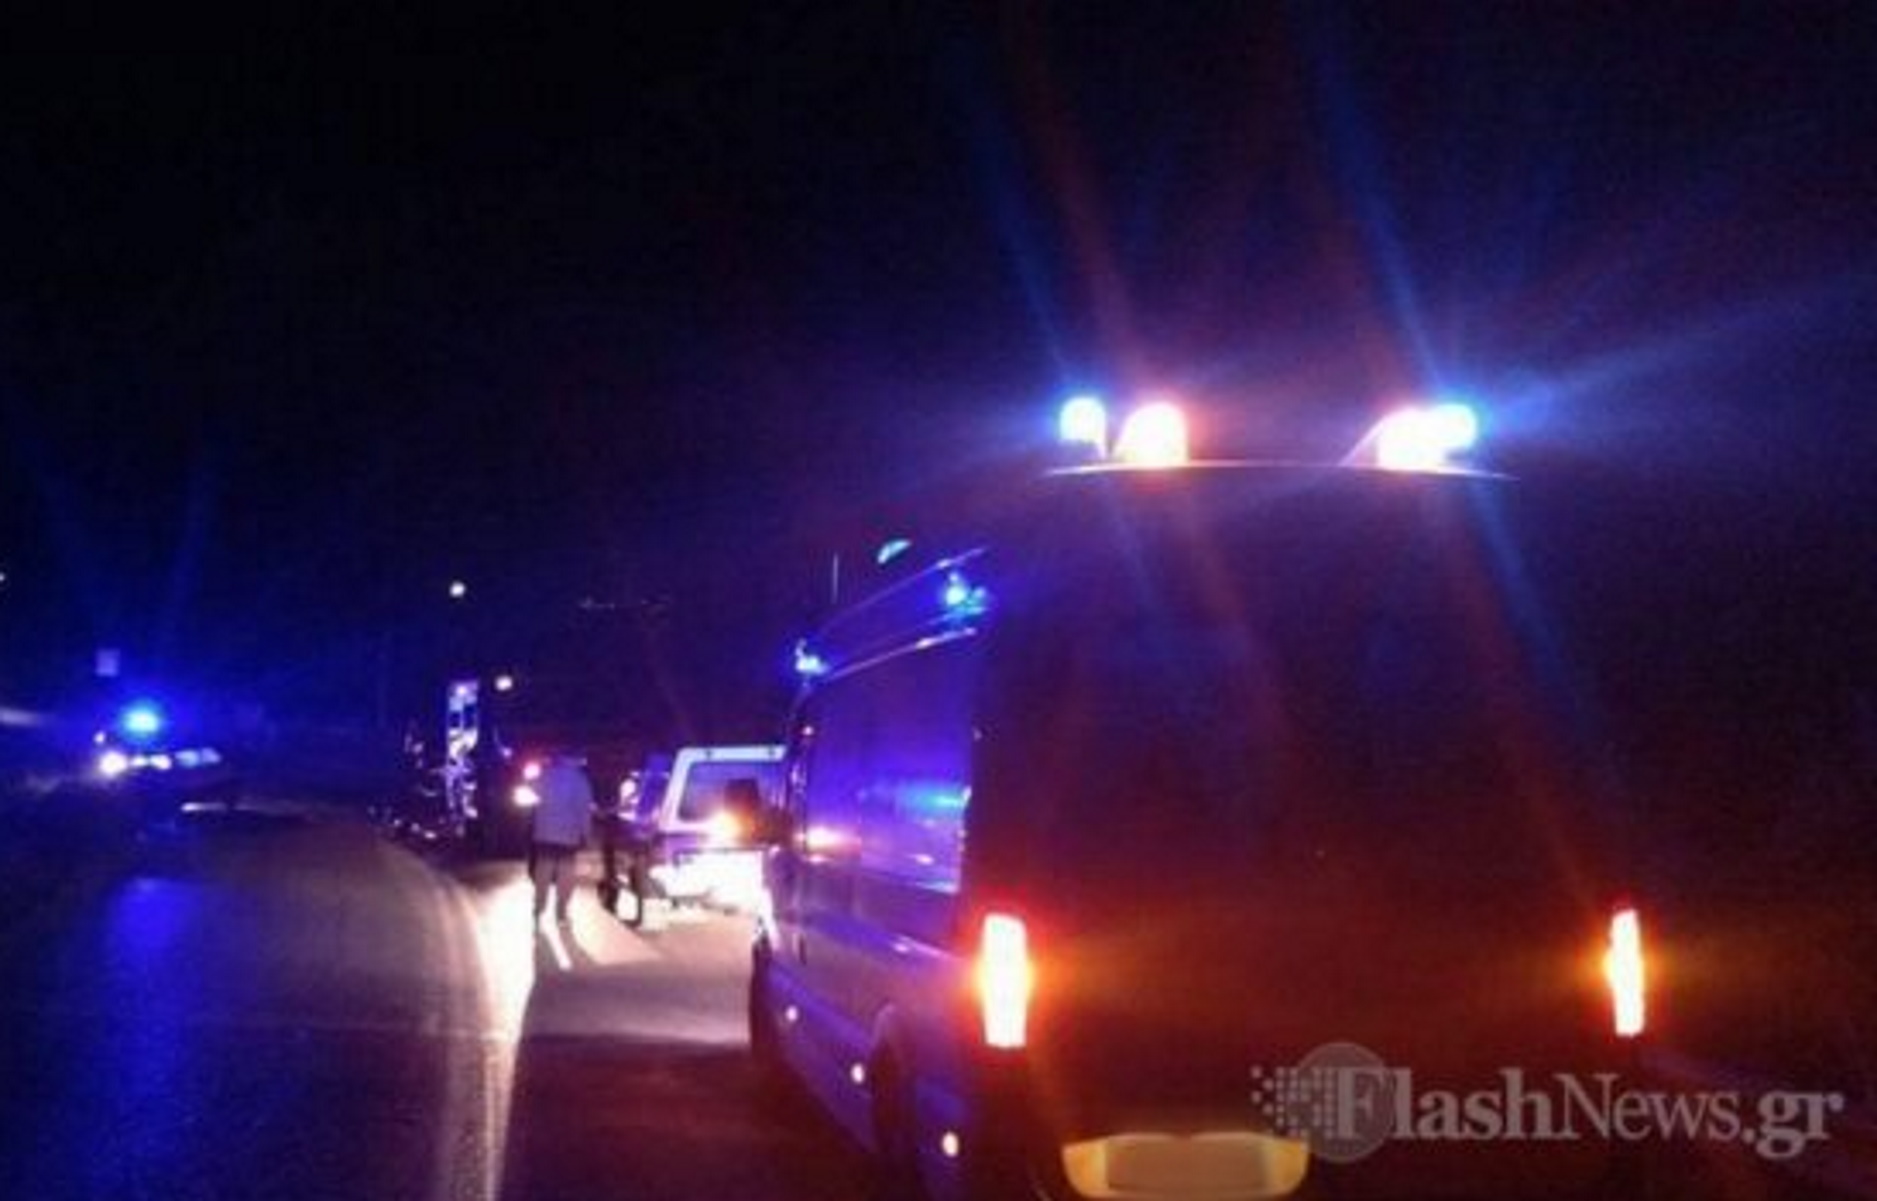 Κρήτη: Τροχαίο δυστύχημα στην Κνωσσό – Γυναίκα παρασύρθηκε από μηχανή και ξεψύχησε στο νοσοκομείο